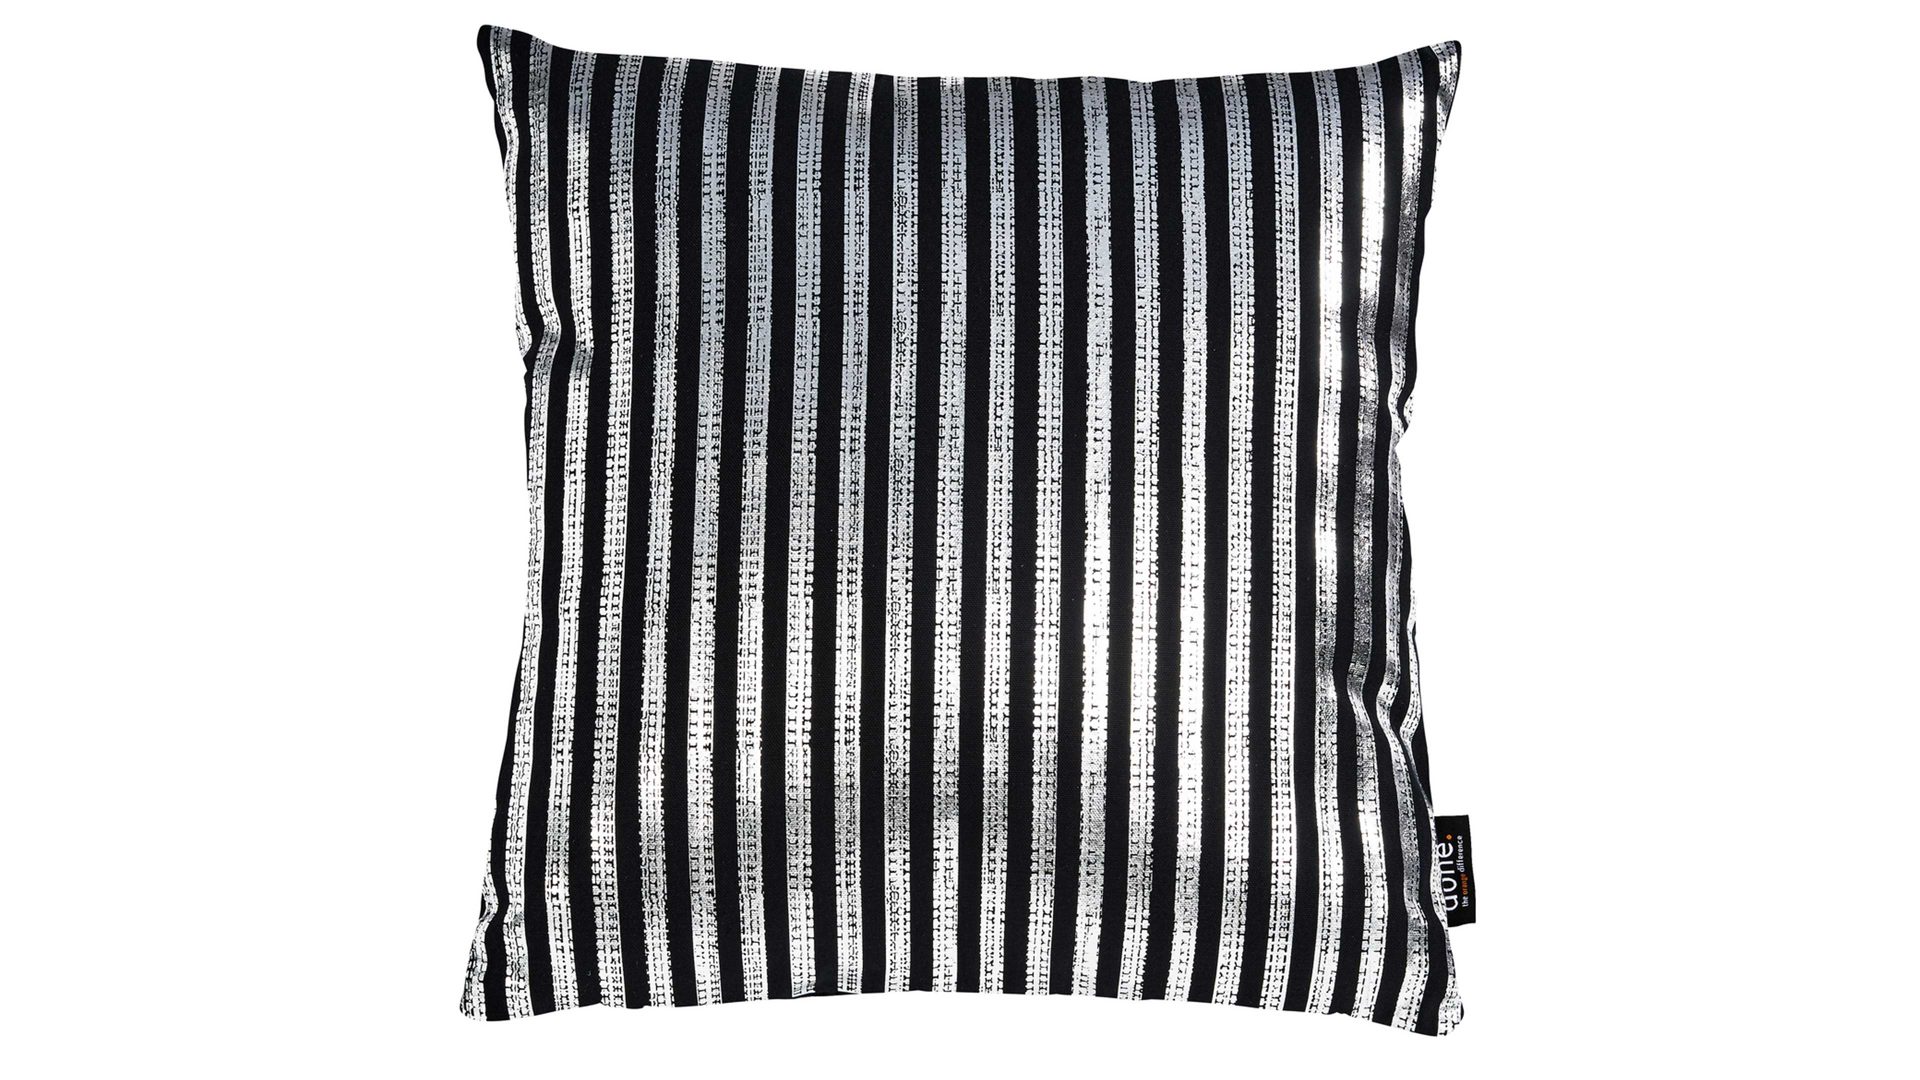 Einzelkissen Done.® aus Baumwolle in Schwarz done.® Kissen Cushion Stone schwarz & Silberdruck Stripes - ca. 45 x 45 cm